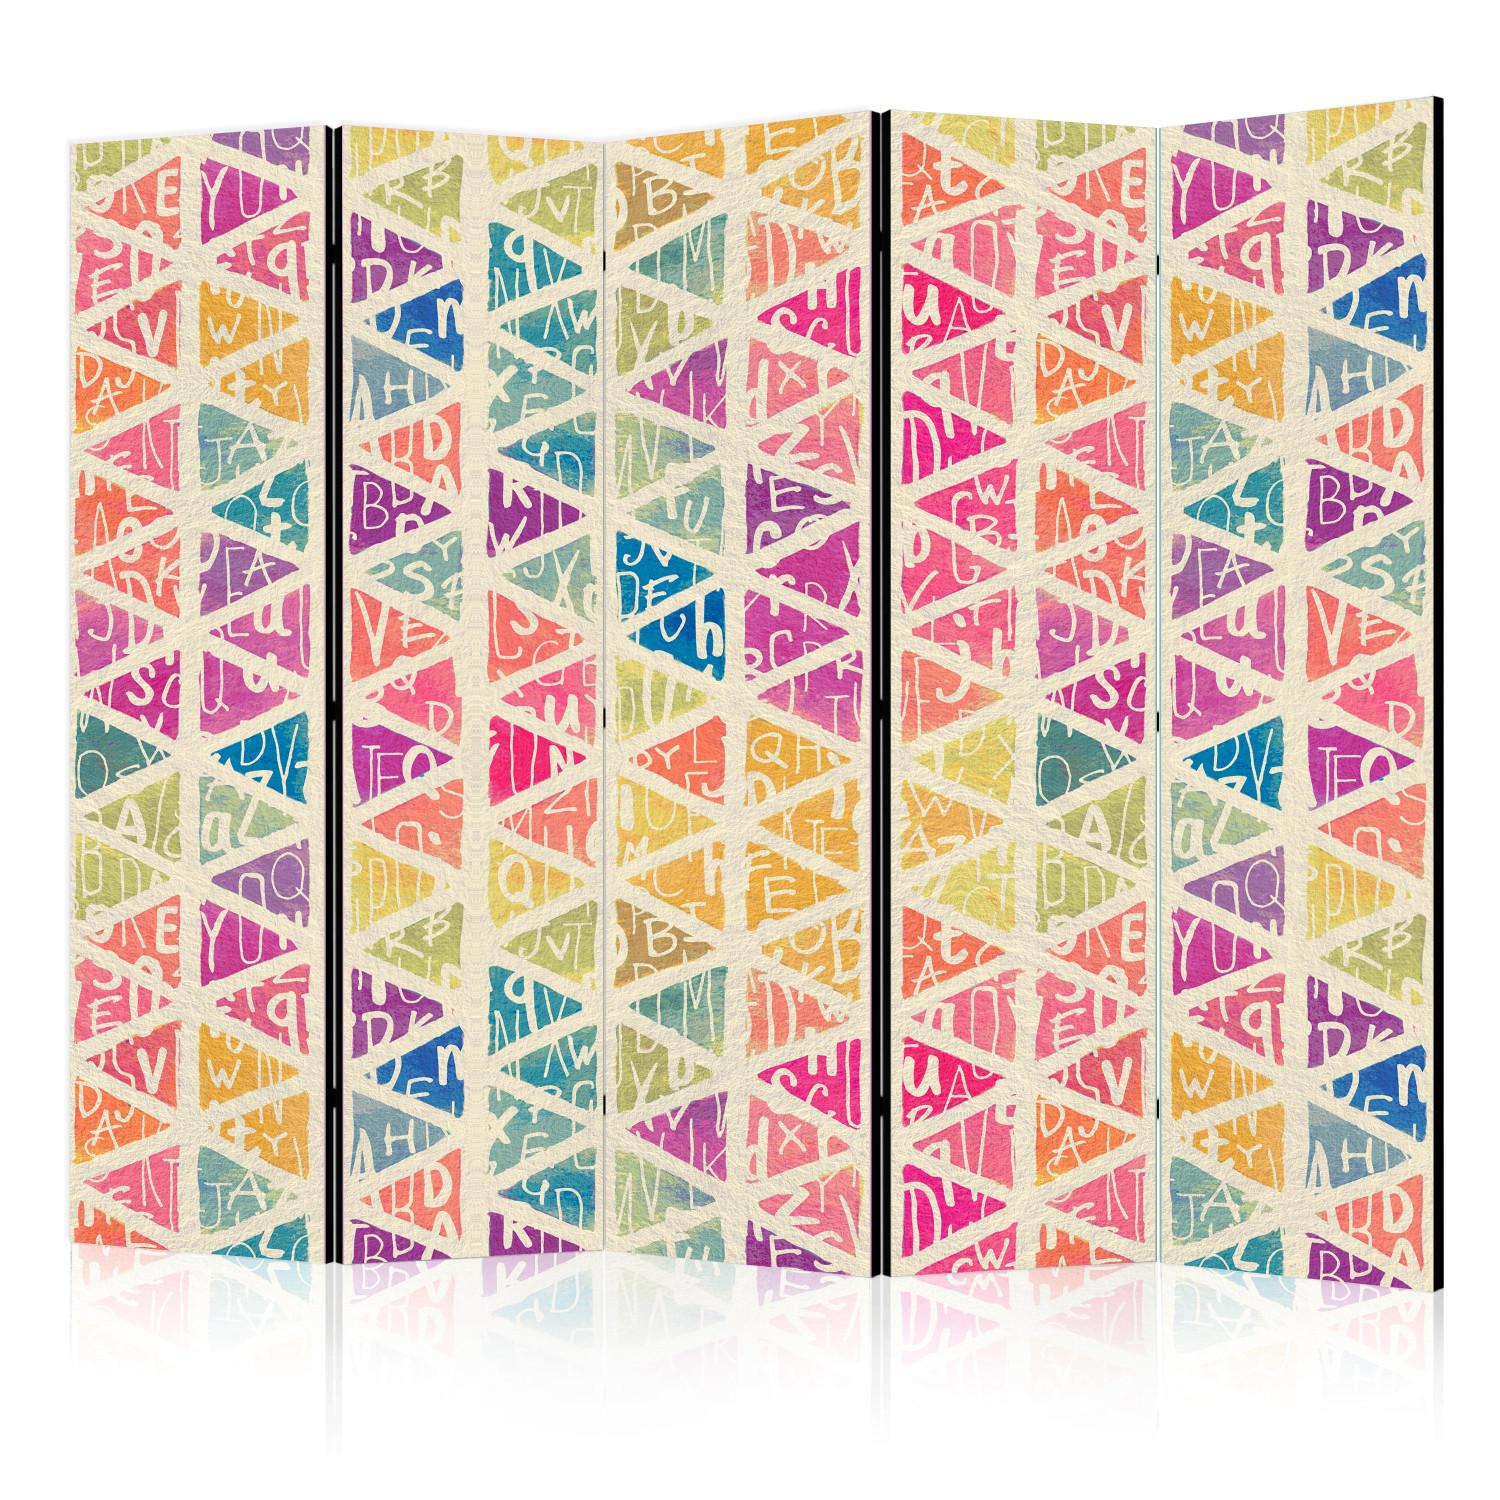 Biombo decorativo Letras y Triángulos II (5 partes) - figuras geométricas coloridas